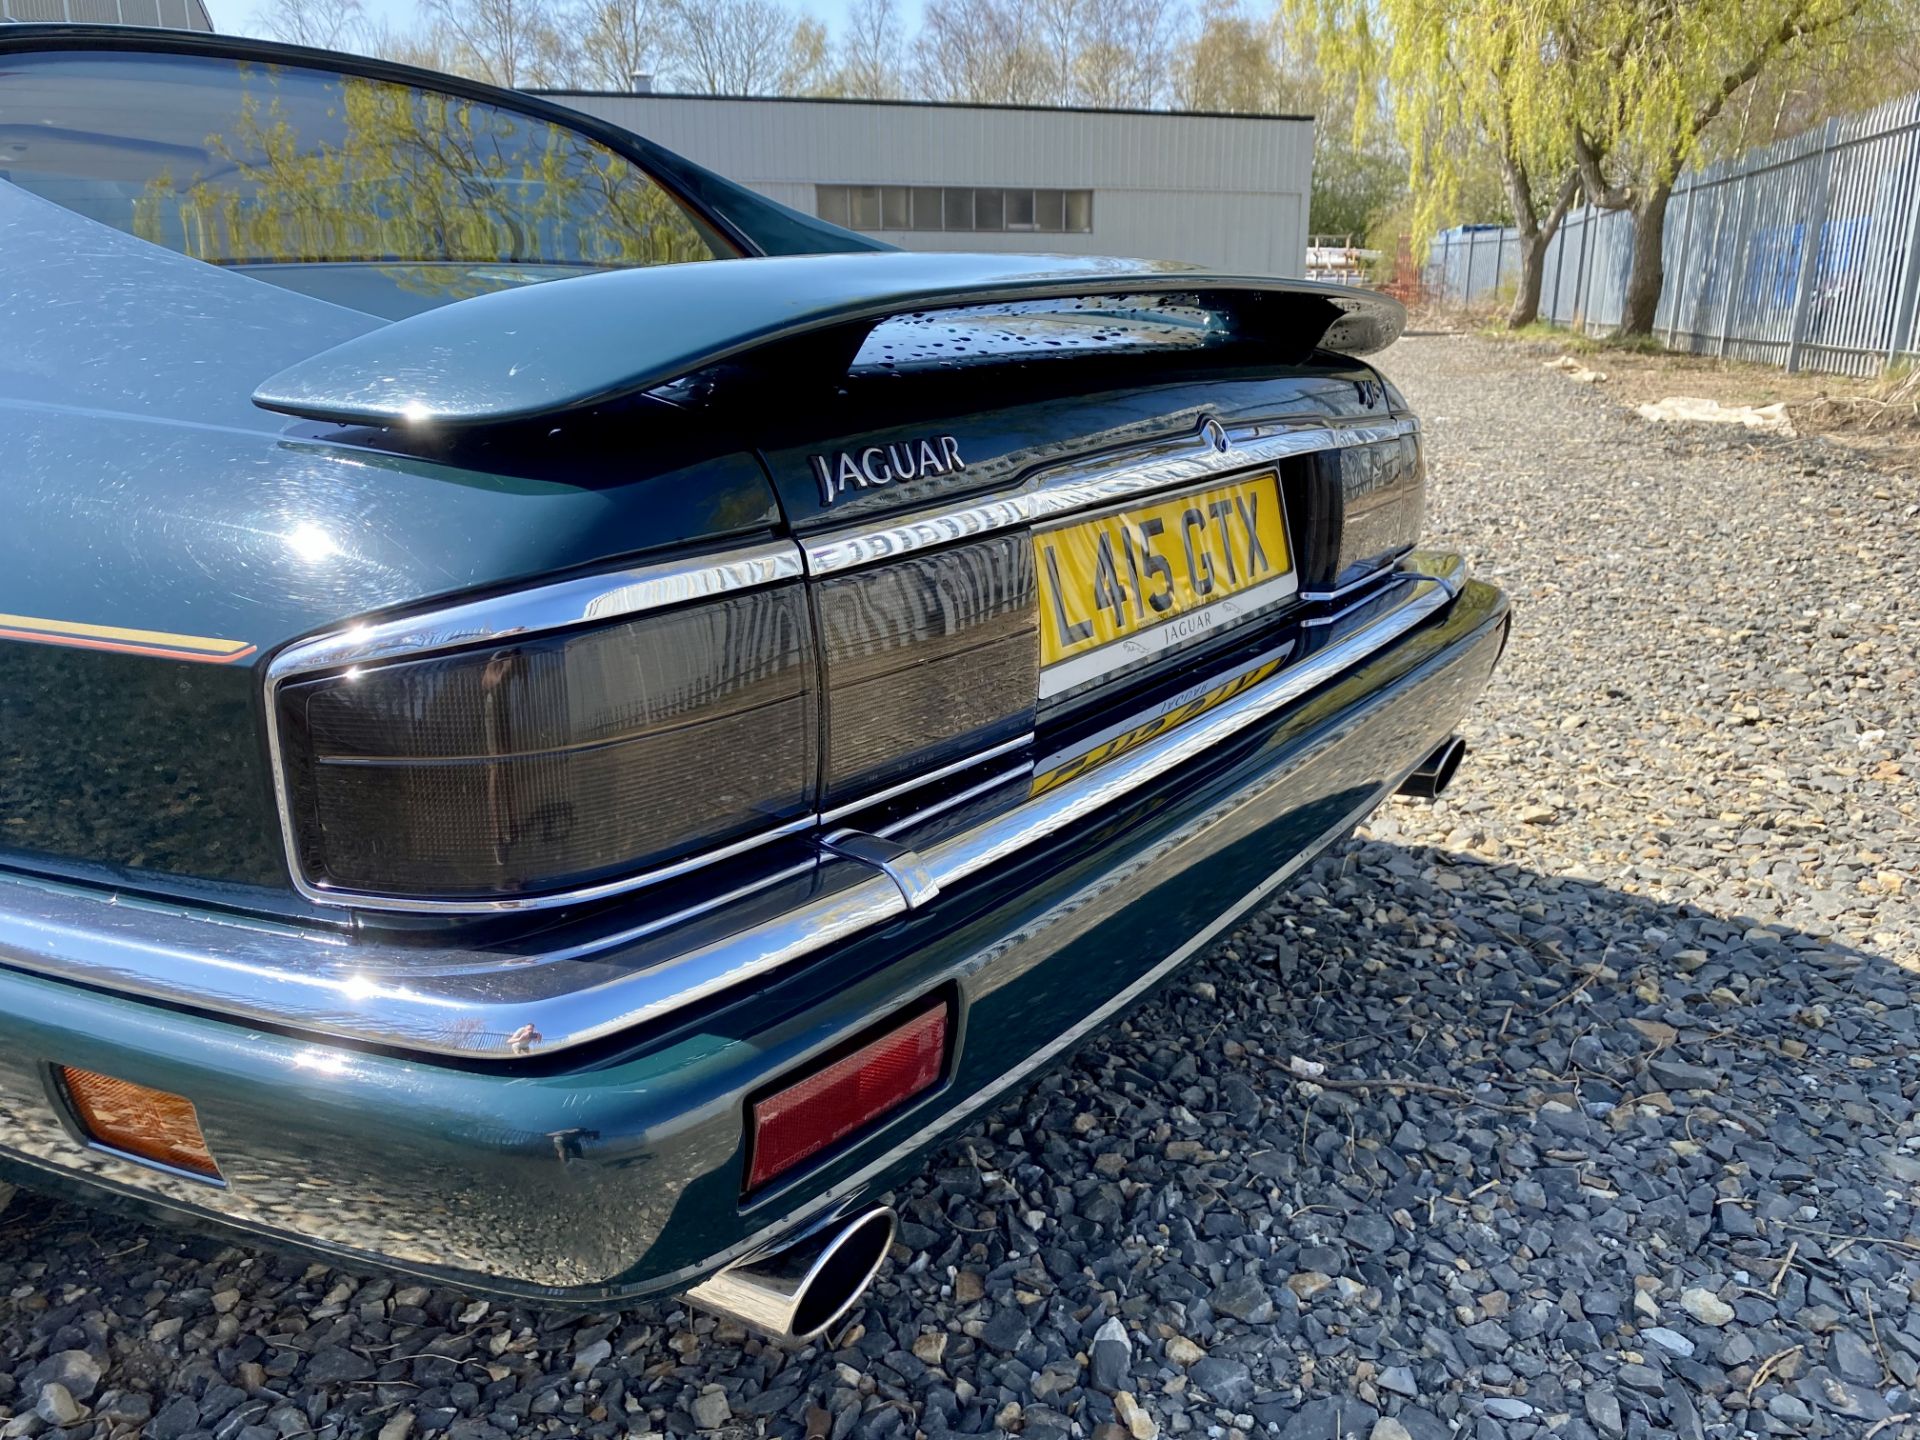 Jaguar XJS 4.0 Coupe - Image 42 of 64